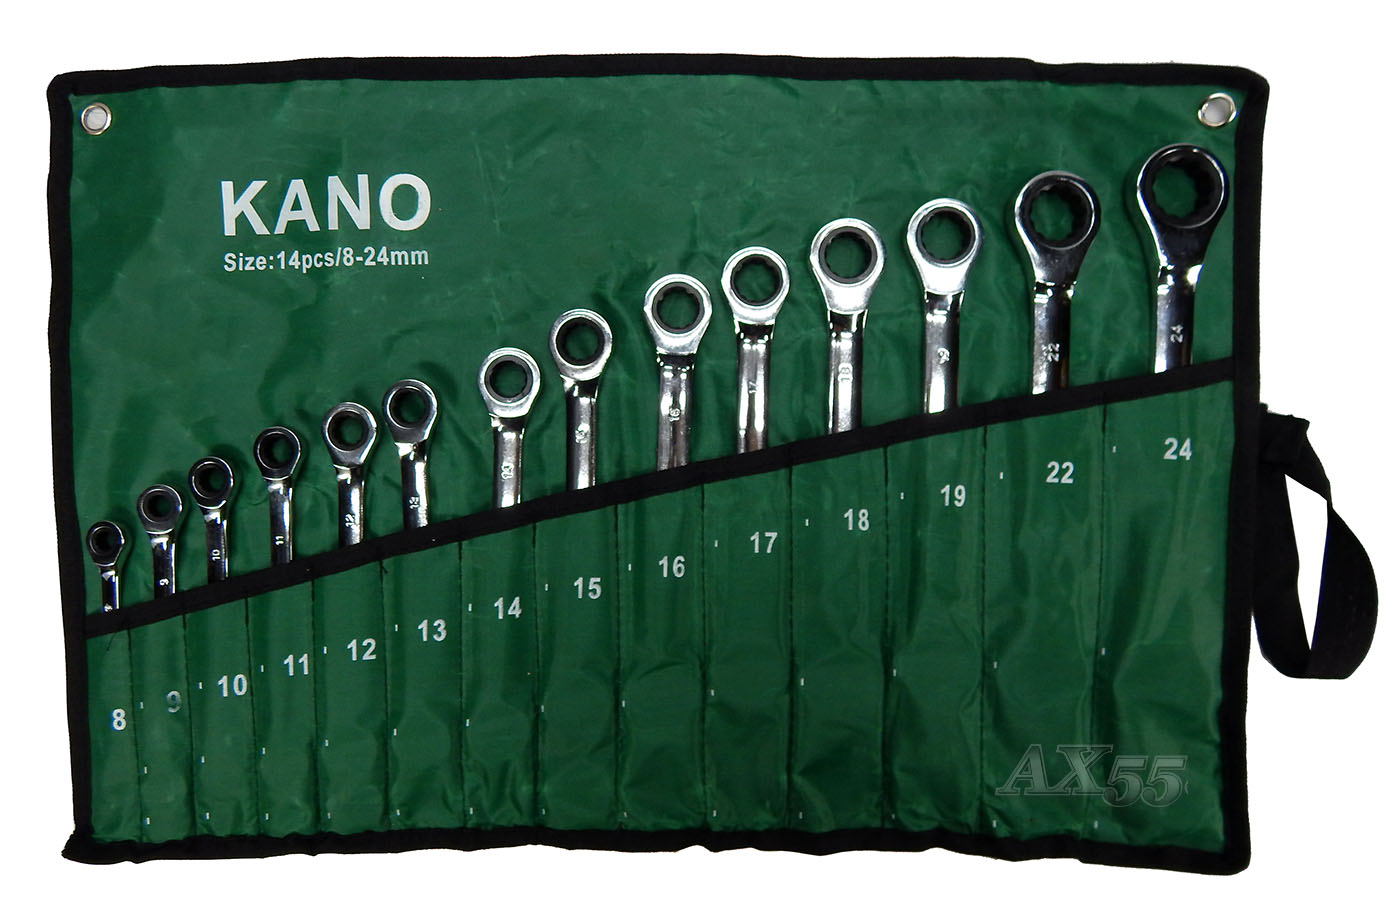 Купить  ключей KANO-14pcs тртка по самой лучшей цене